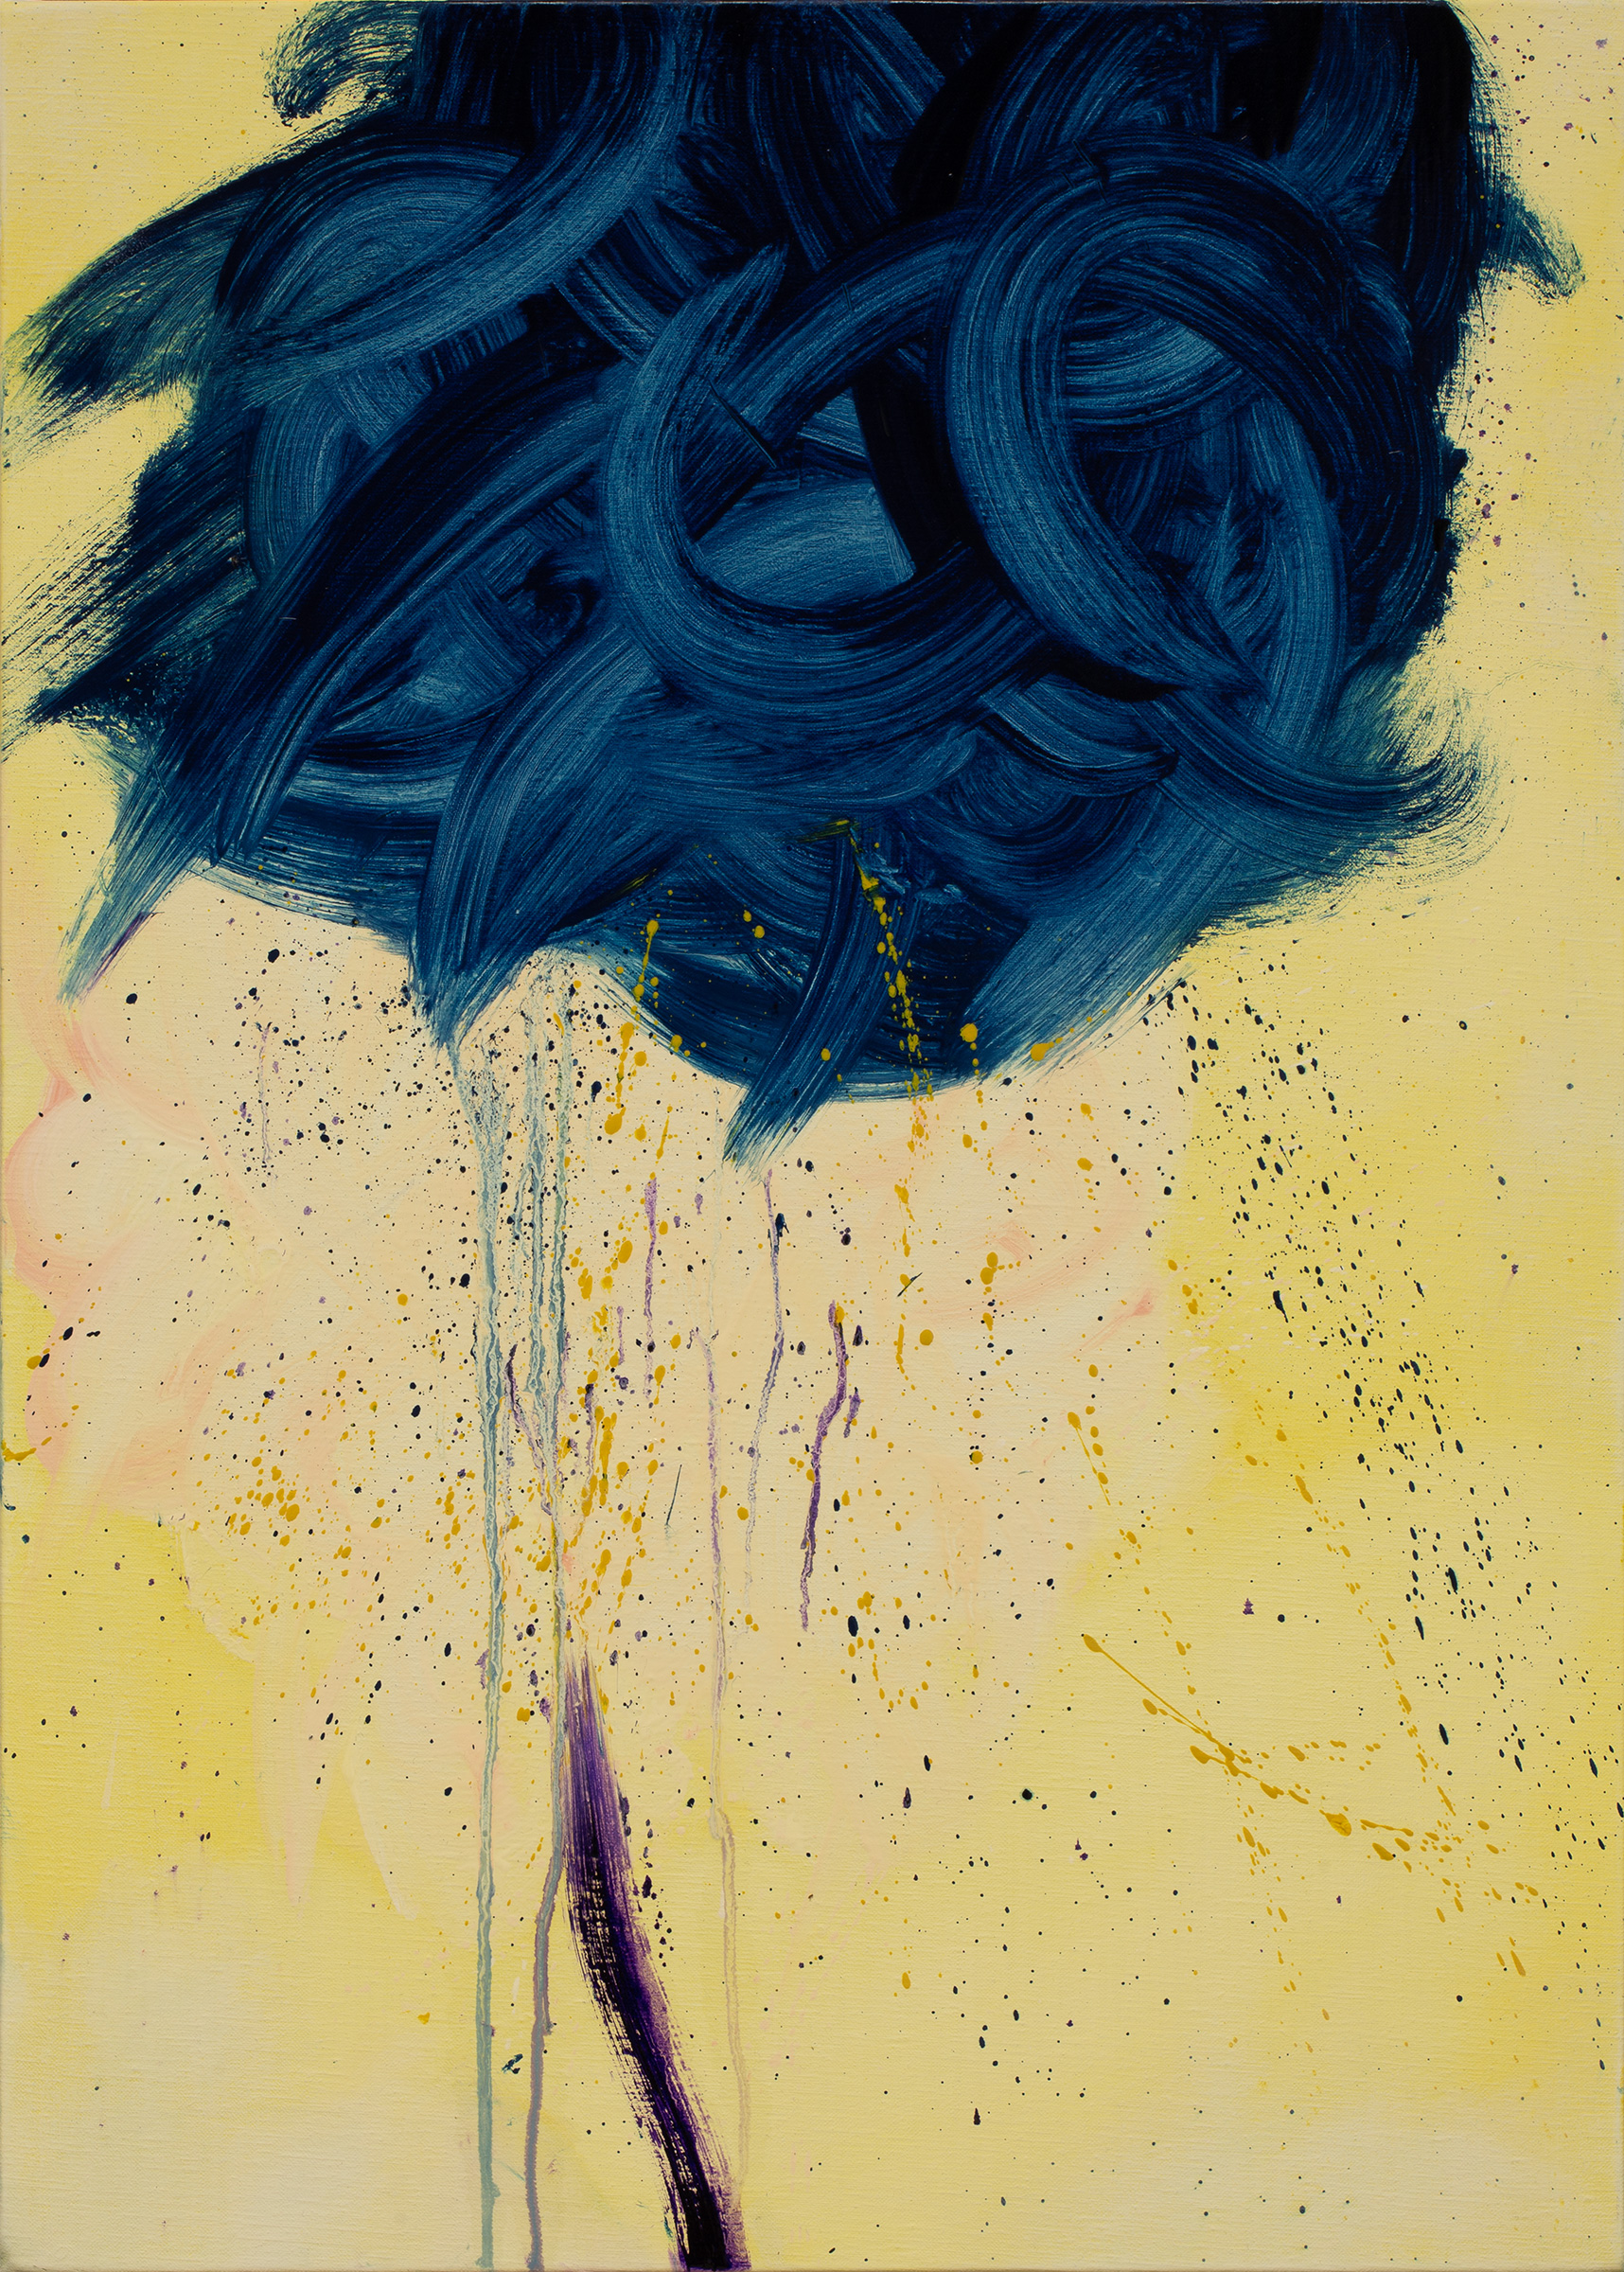 Cercando nuvole dentro di me n. 5, 2022 | Oil on canvas, 70 x 50 cm